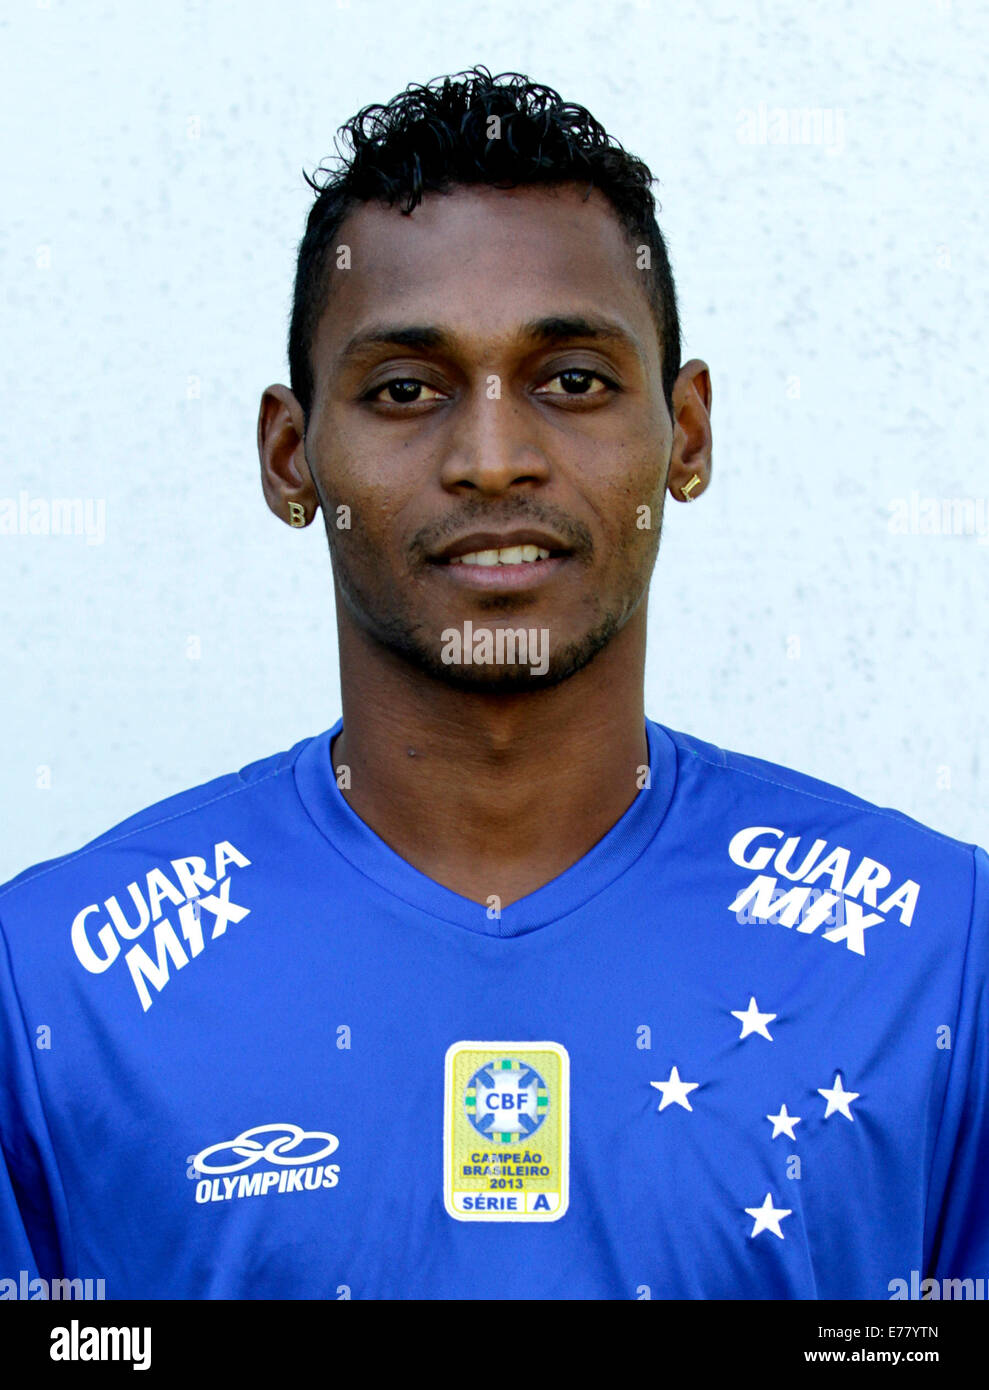 Brazilian Football League Serie A / ( Cruzeiro Esporte Clube ) - Marco Antonio da Silva - brazilian-football-league-serie-a-cruzeiro-esporte-clube-marco-antonio-E77YTN